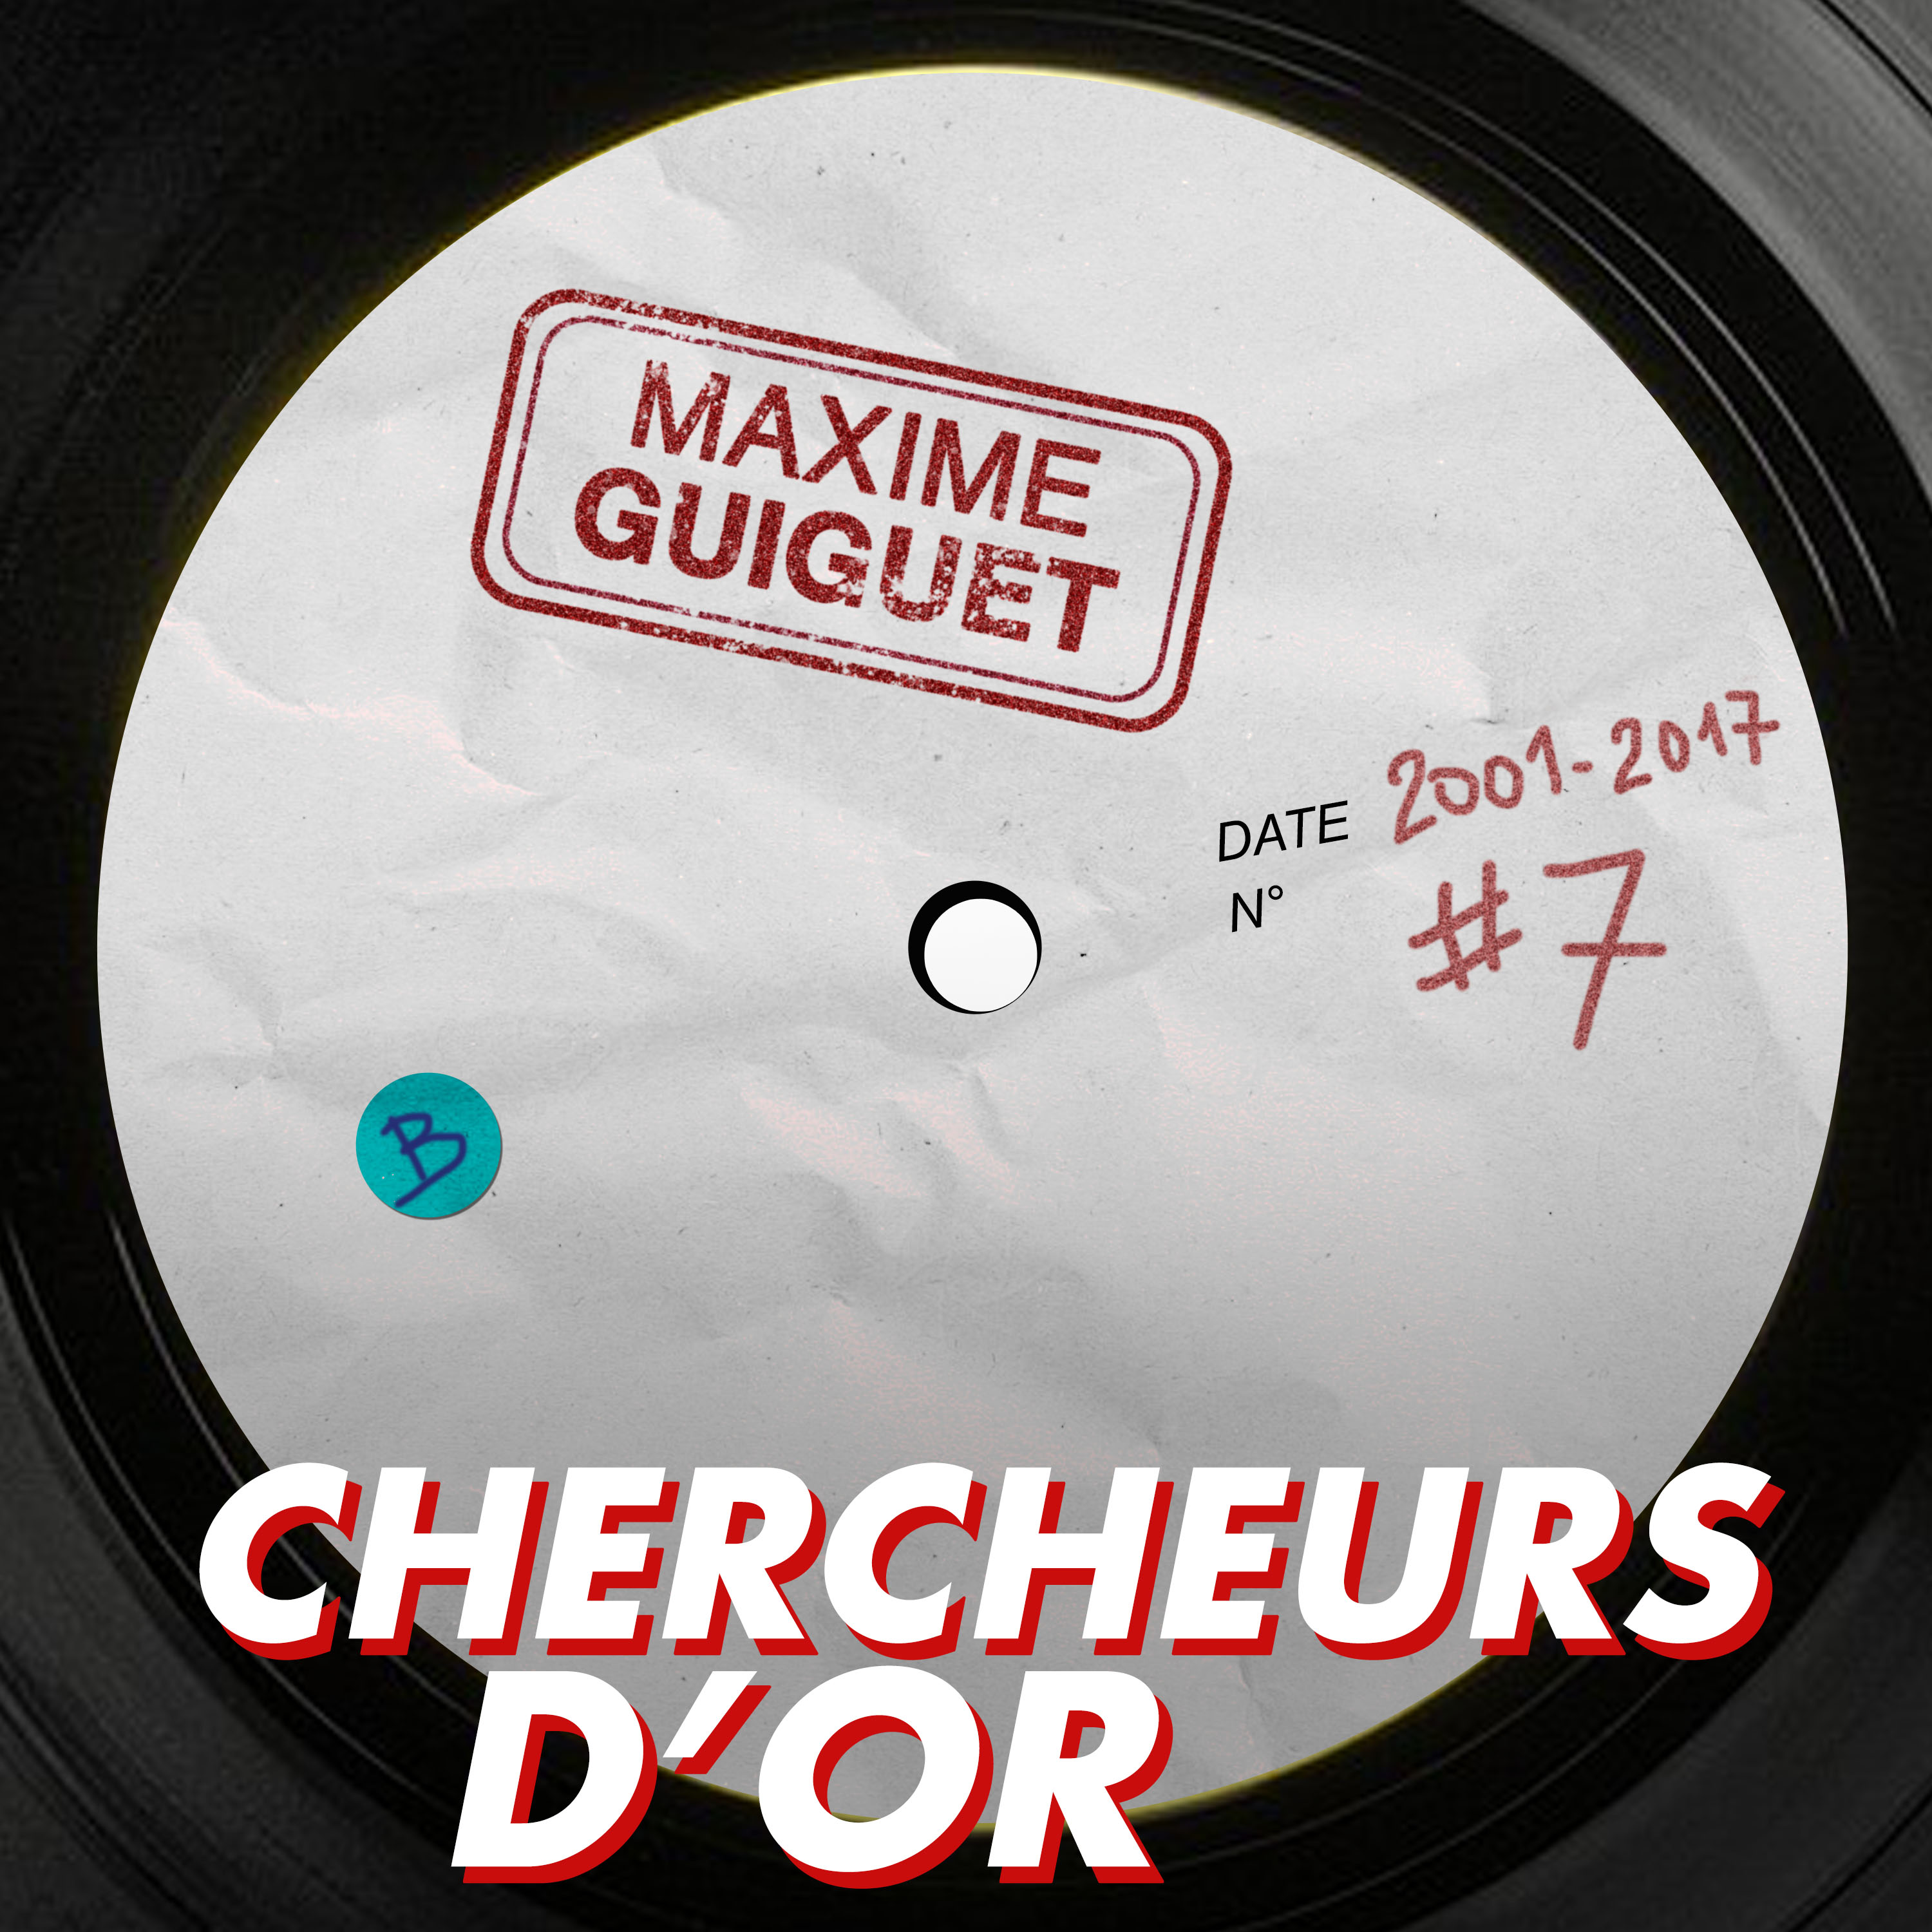 Chercheurs d’or, épisode 7 — Max Guiguet